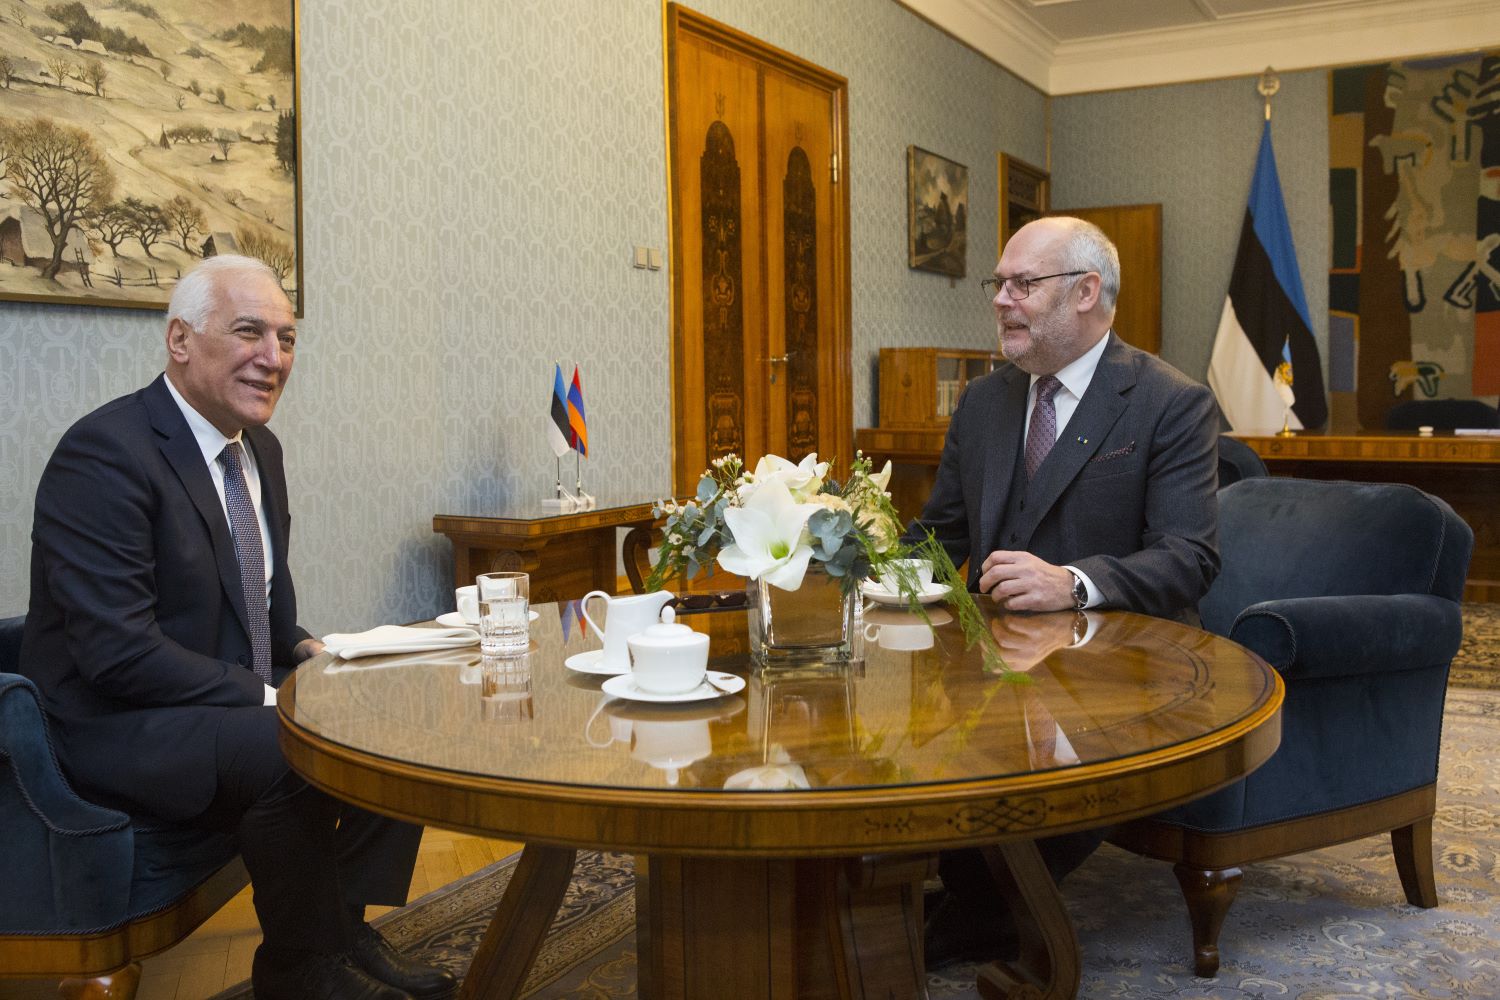 President Karis kohtumisel Armeenia presidendiga: väikeriikidele on tähtis sisemine demokraatlik tugevus